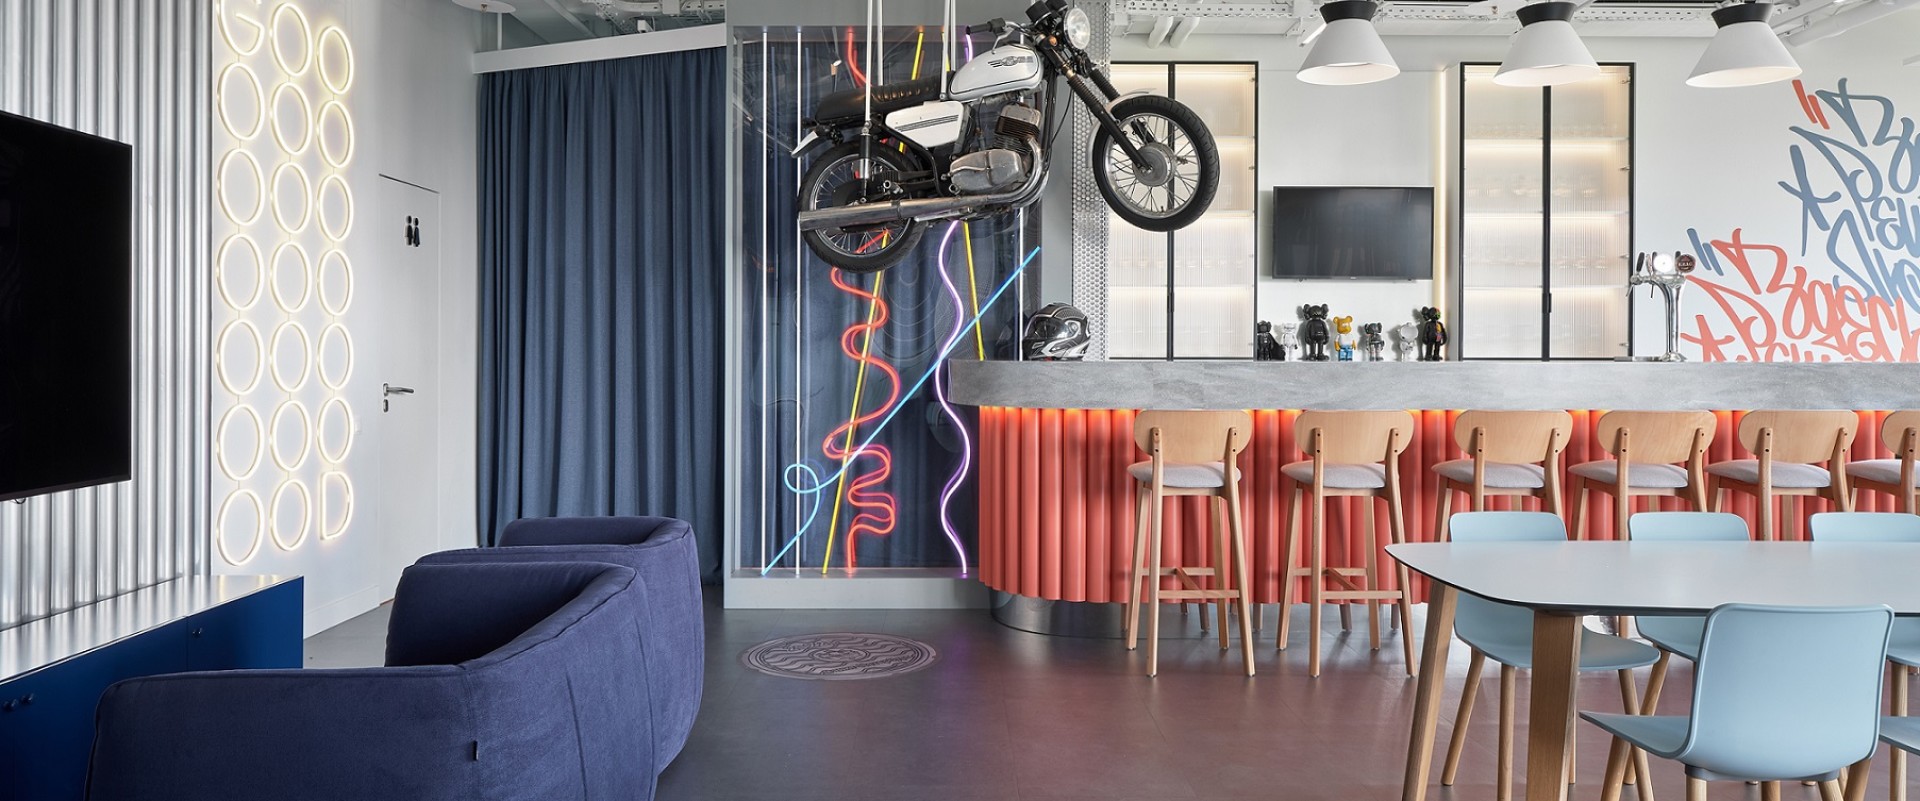 Avito office space design for informal communication 